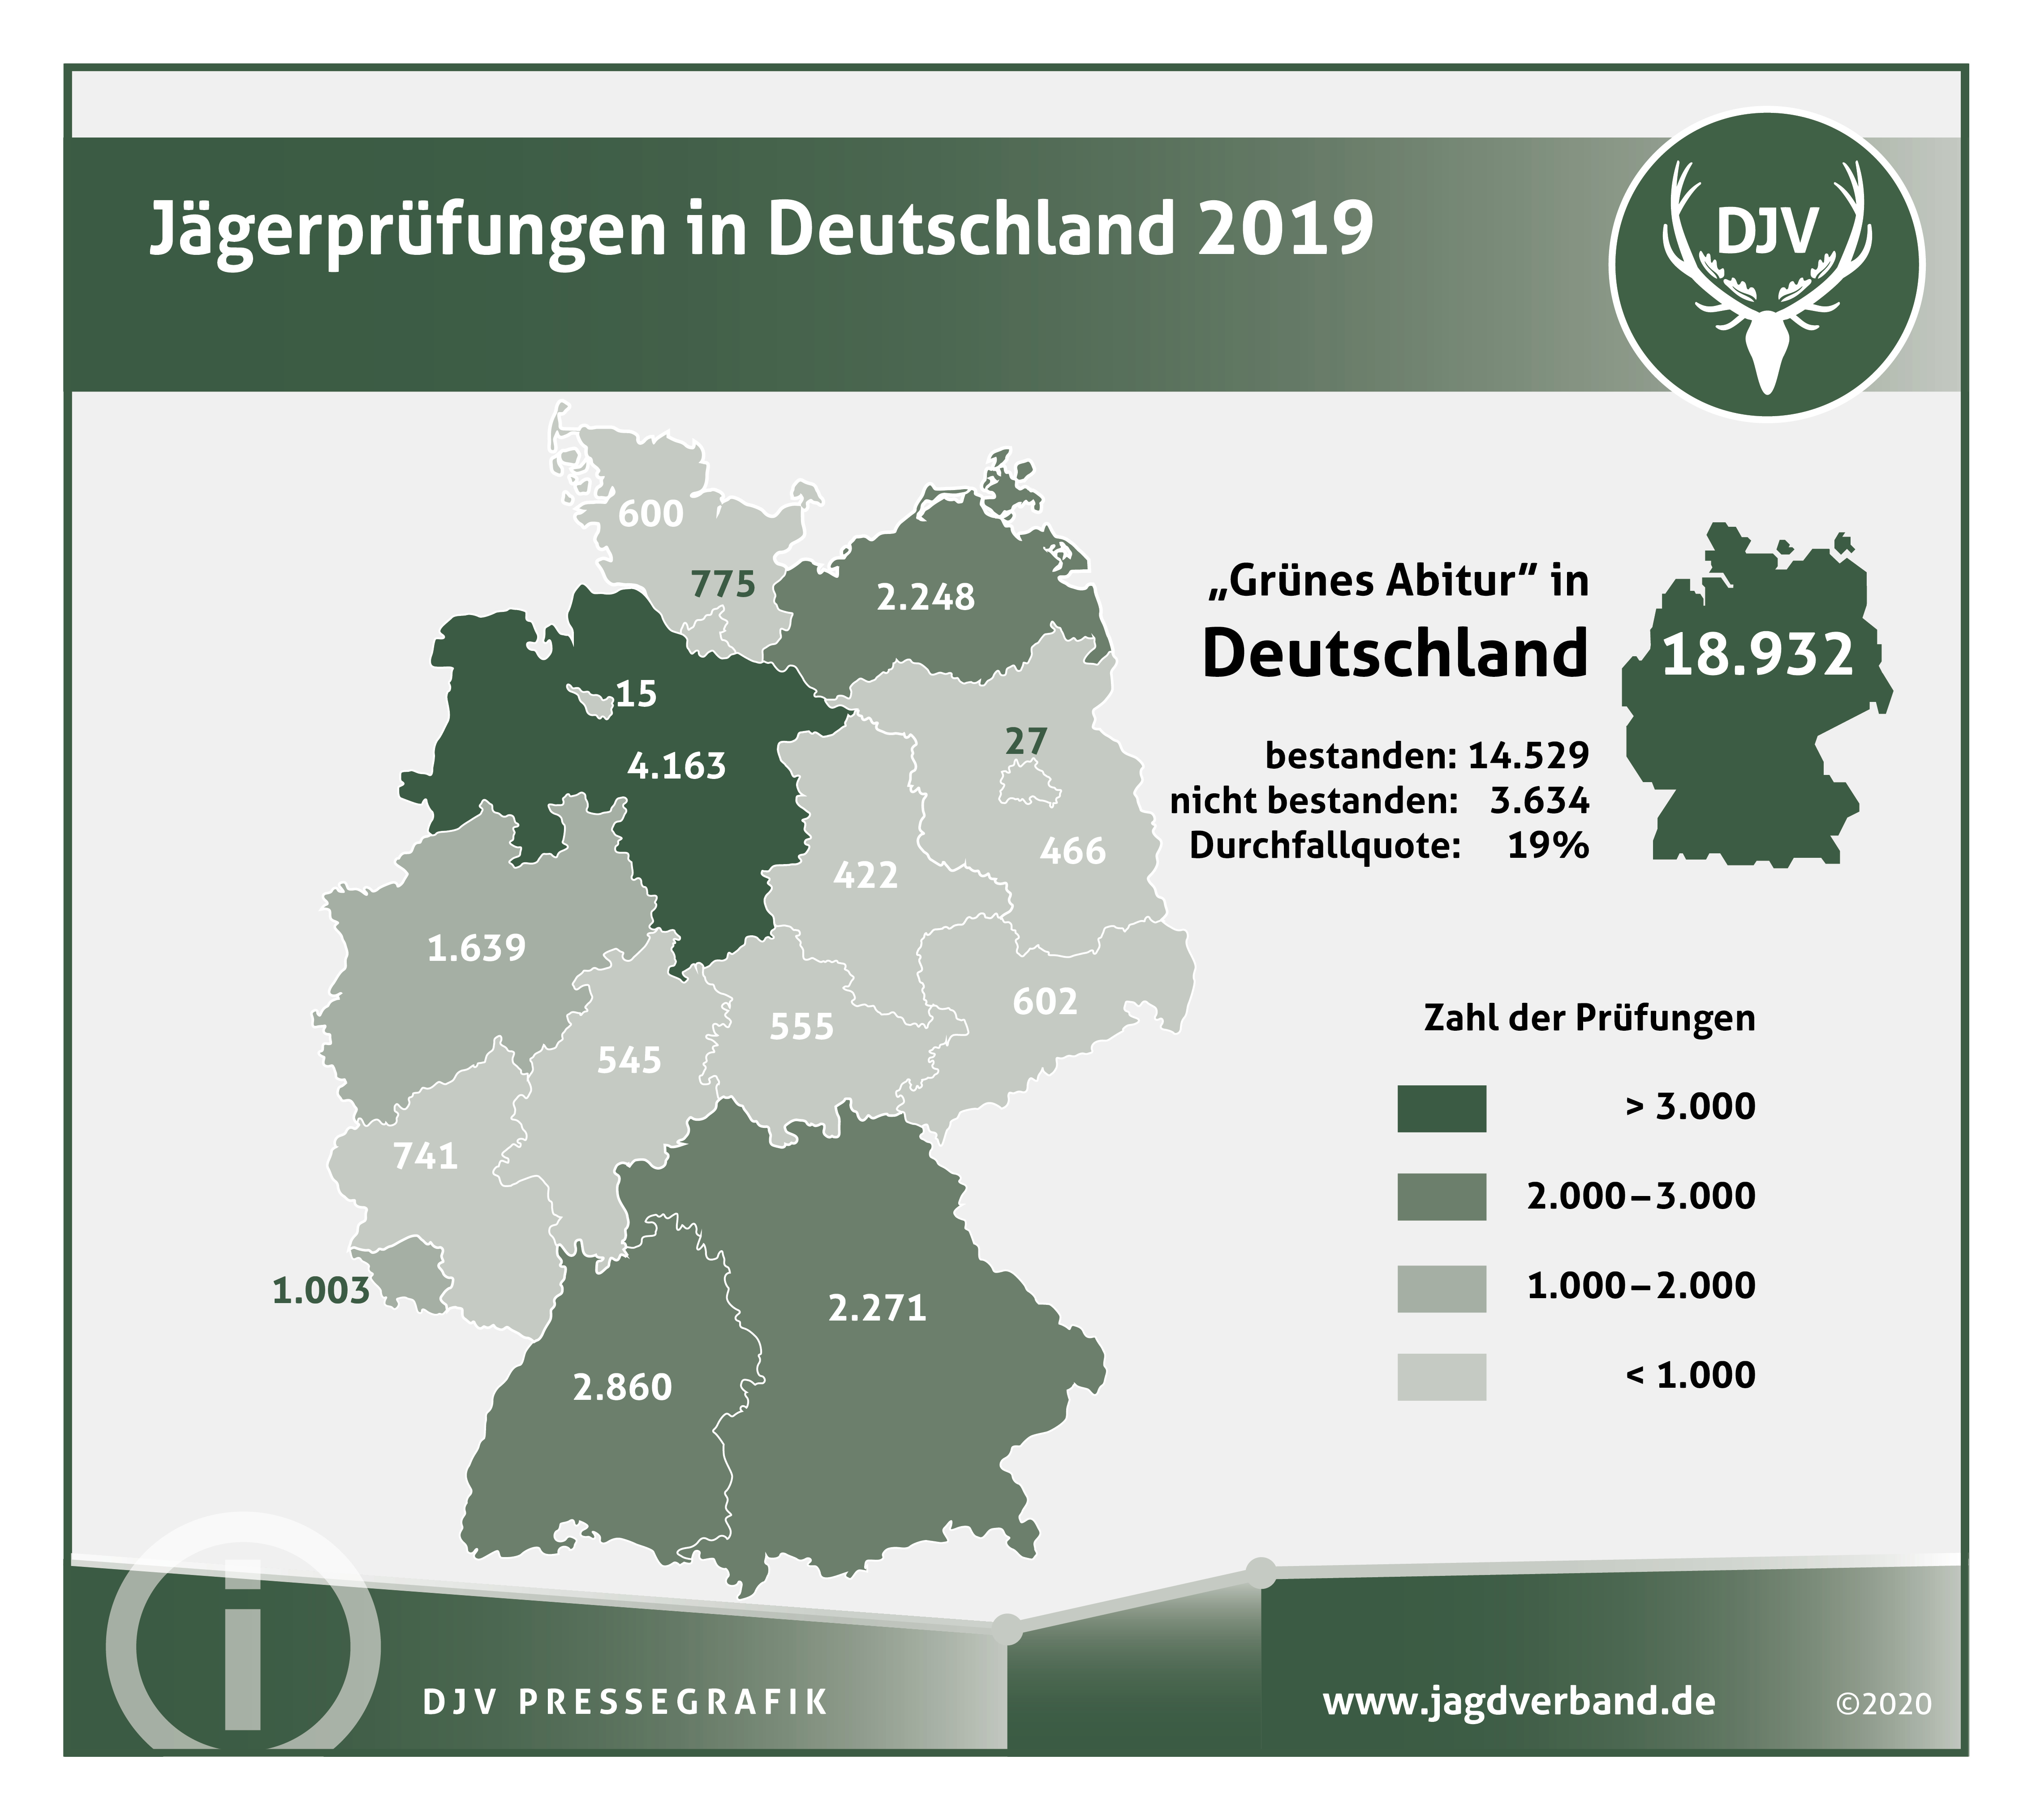 Jägerprüfungen in Deutschland 2019 (Quelle: DJV)